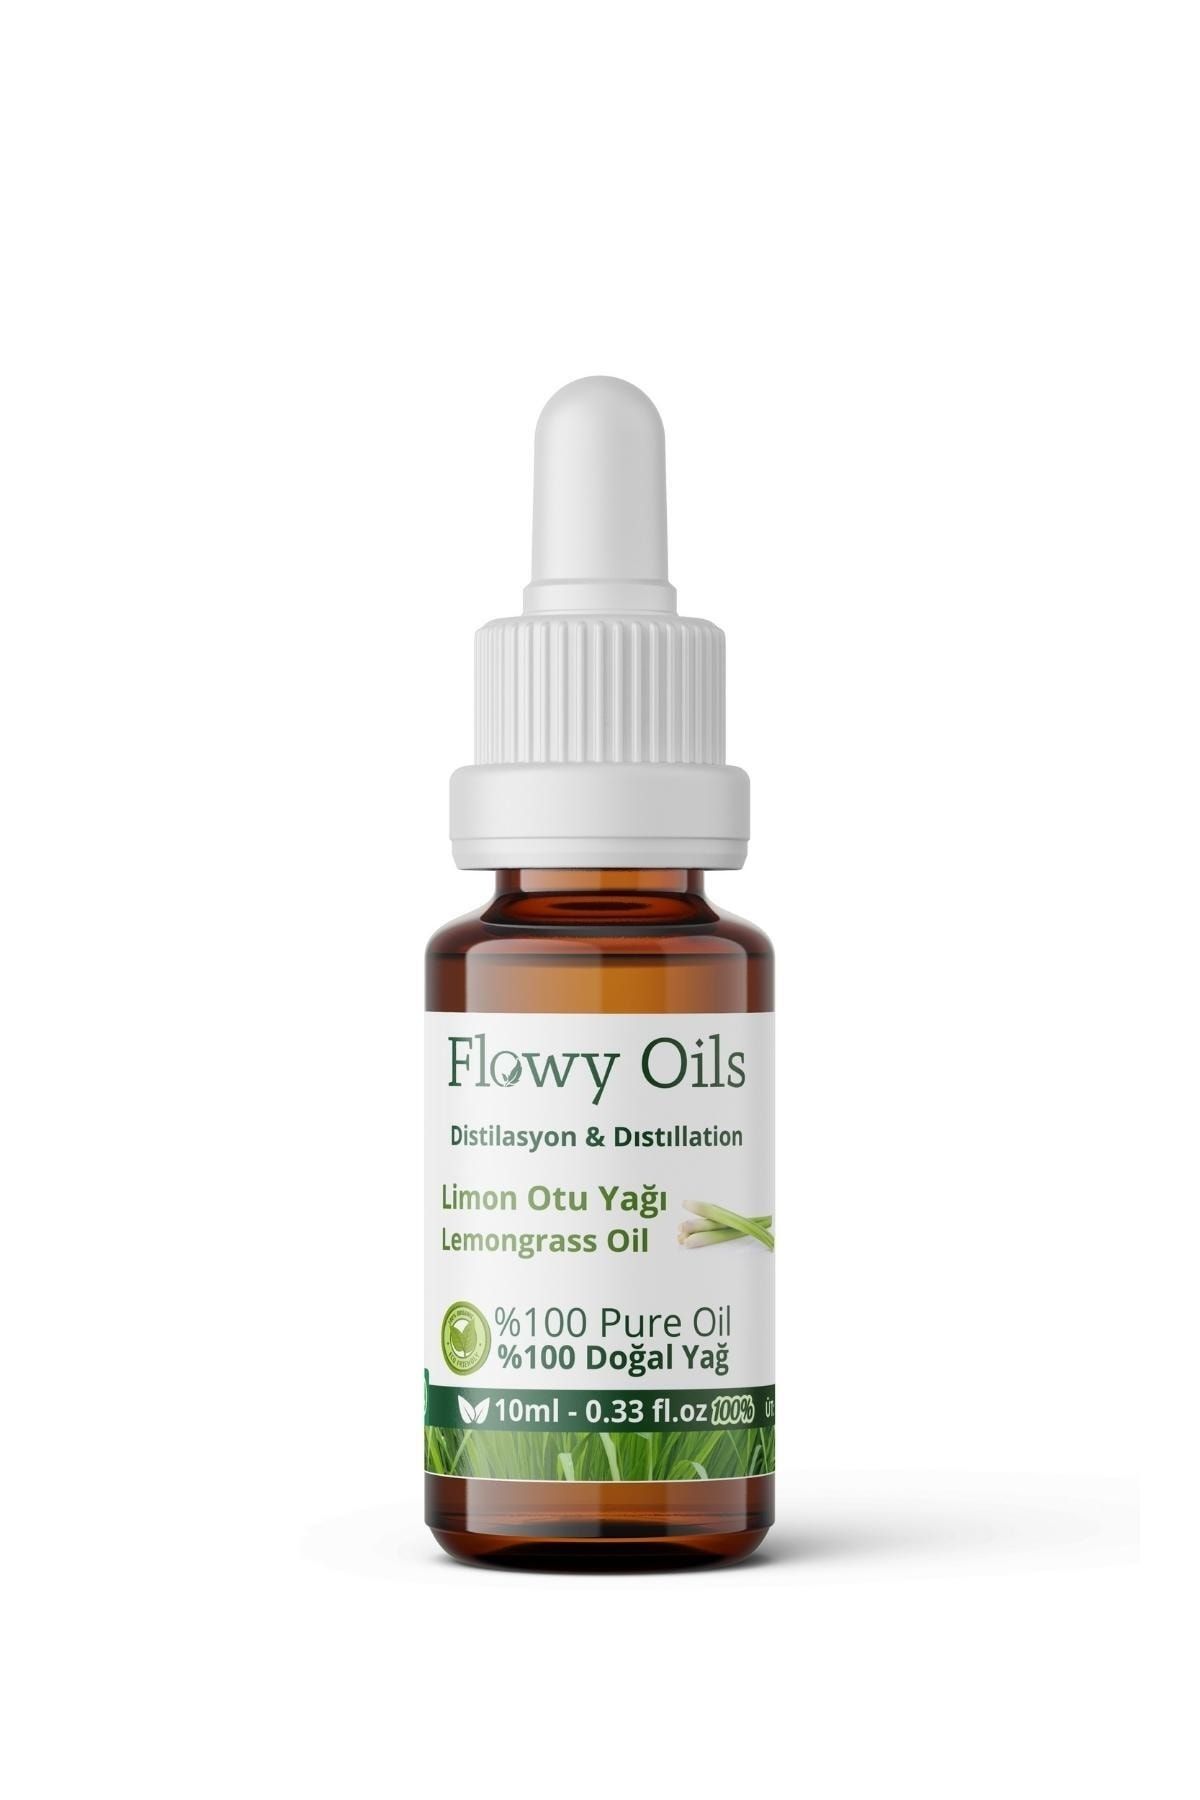 Flowy Oils Limon Otu Yağı %100 Doğal Bitkisel Uçucu Yağ Lemongrass Oil 10ml